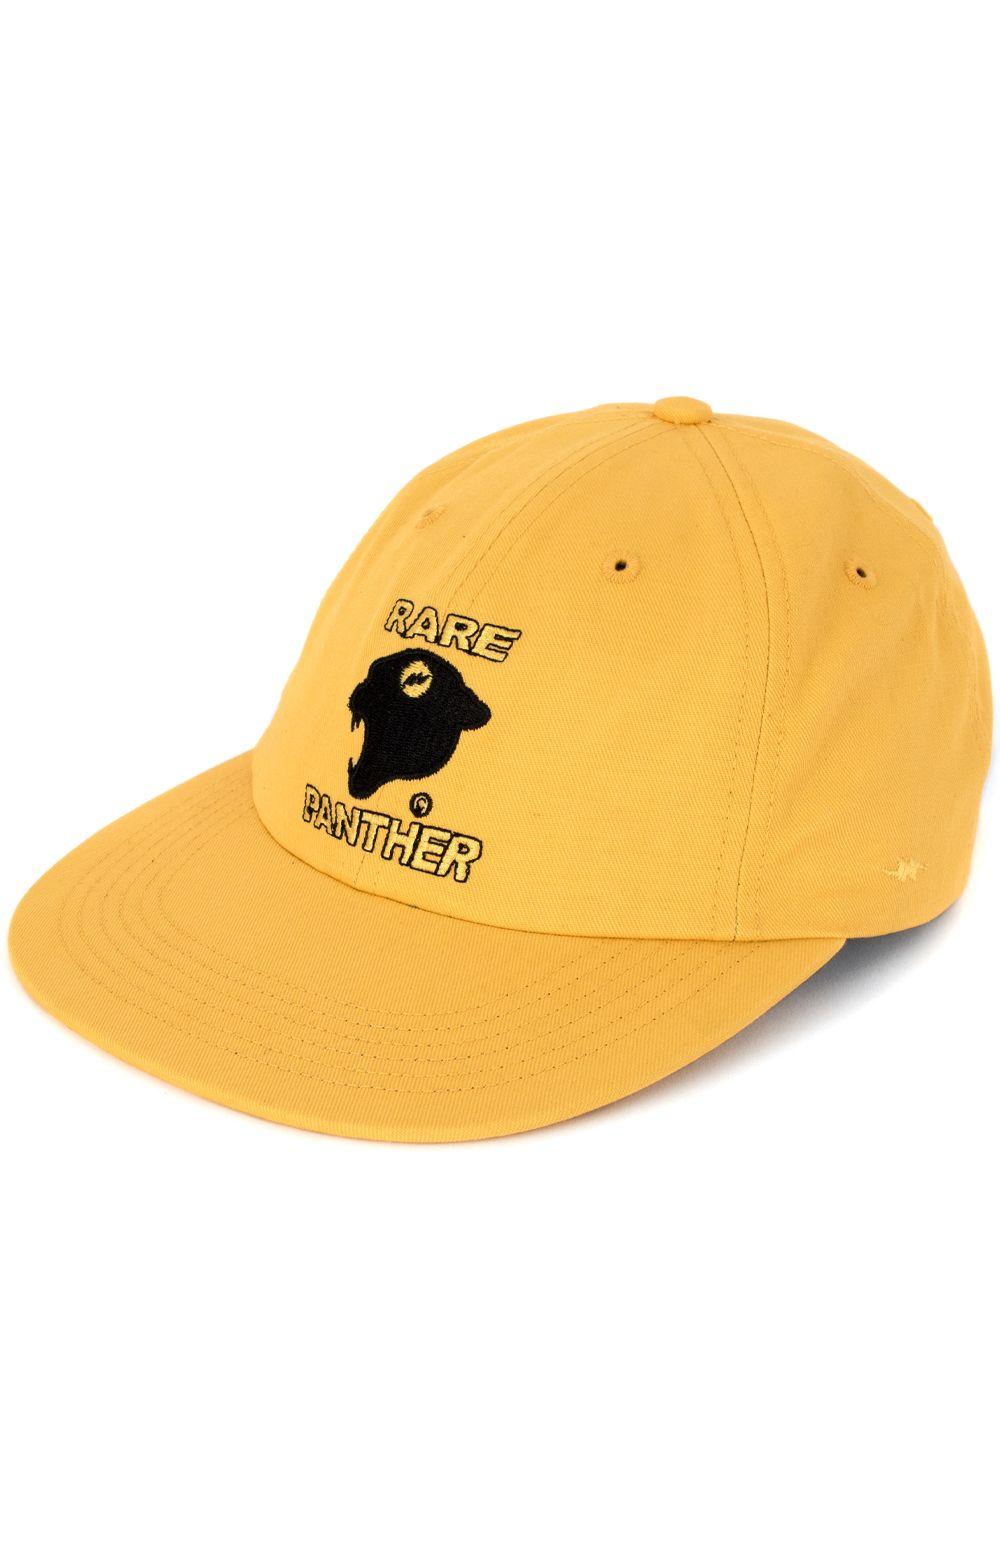 Yellow Panther Logo - Rare Panther, Logo Strap-Back Hat - Yellow | MLTD